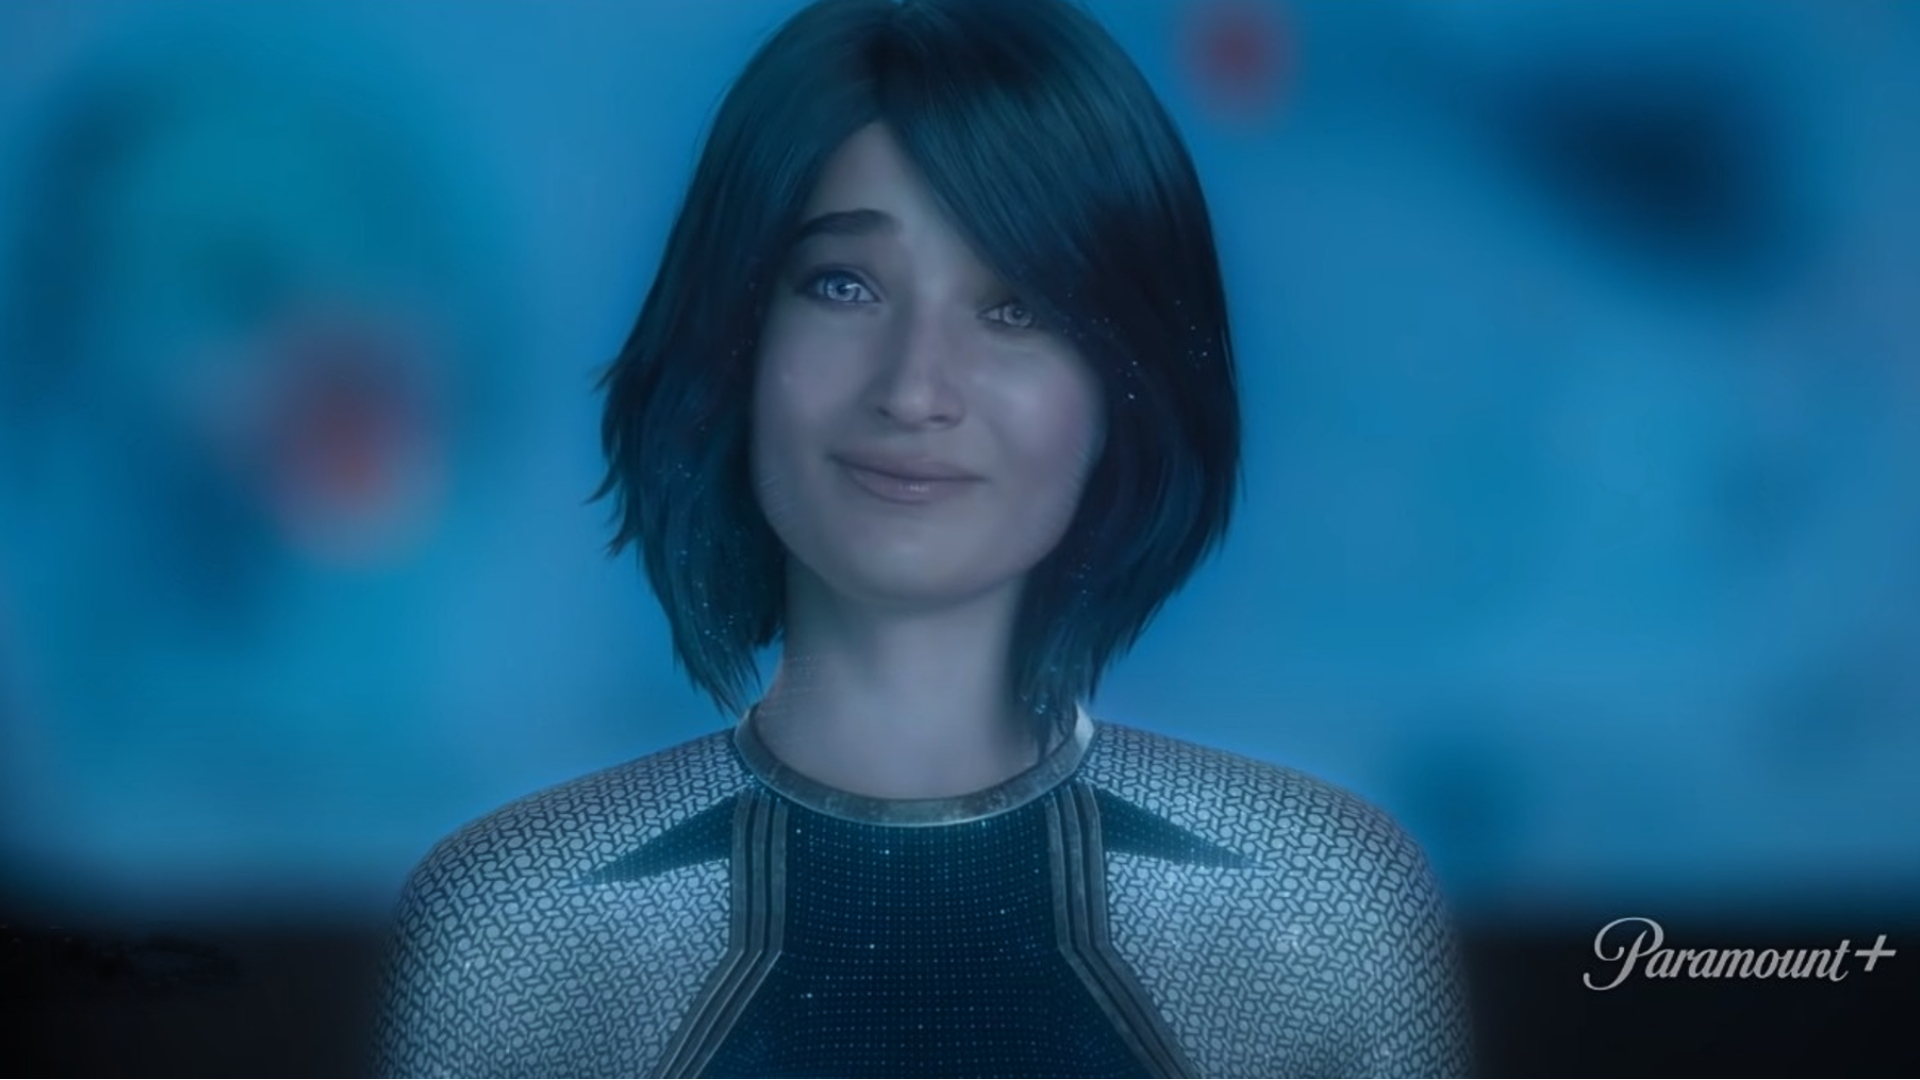 Tampilan baru Cortana seperti yang terlihat di trailer acara Halo TV di Paramount Plus